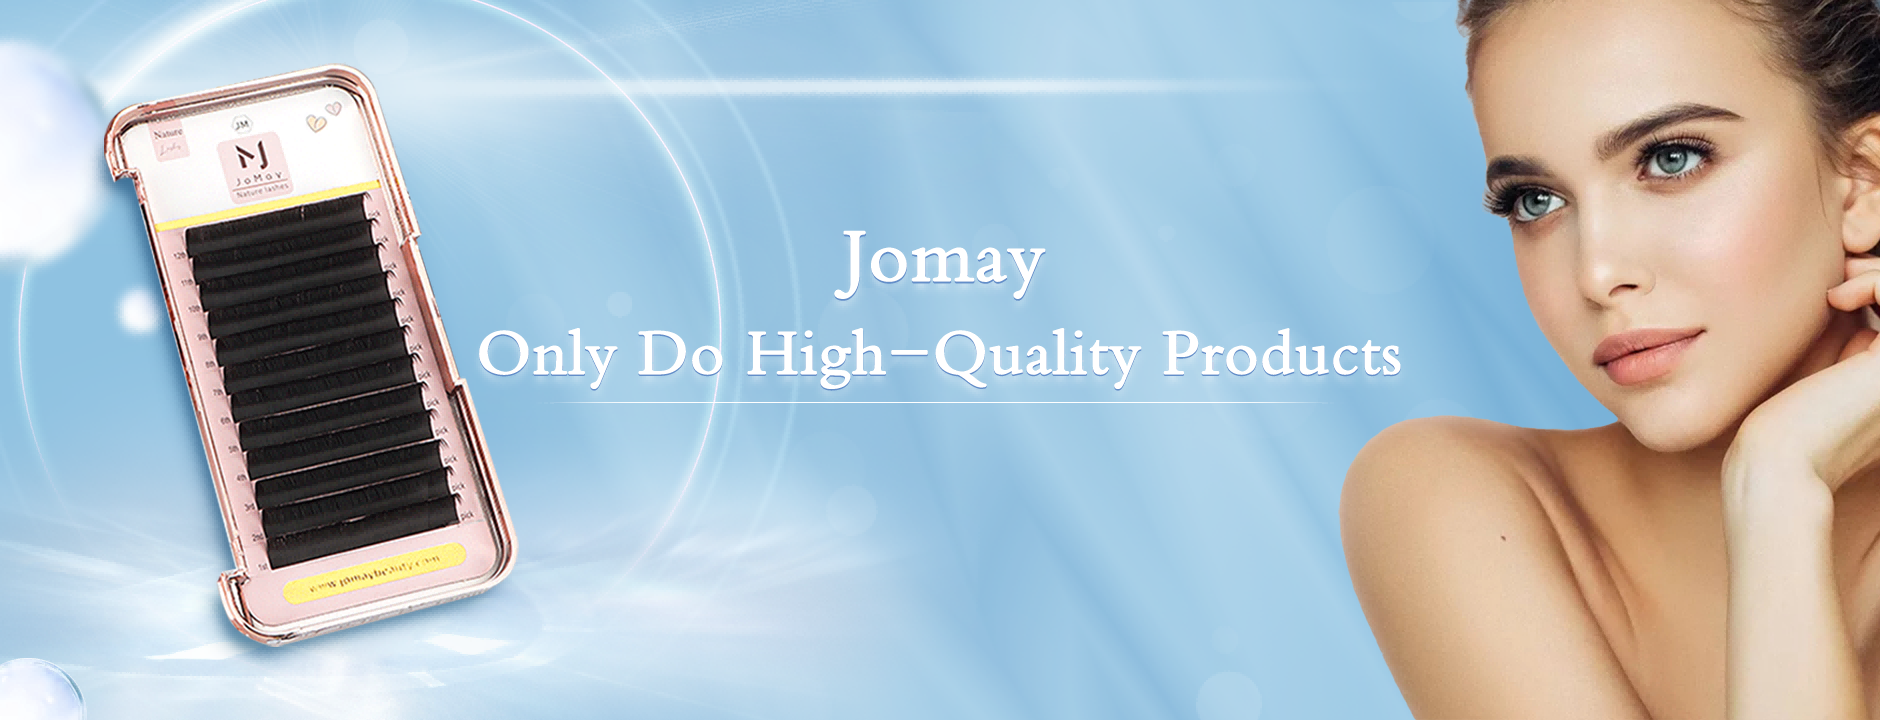 Jomay Beauty Factory